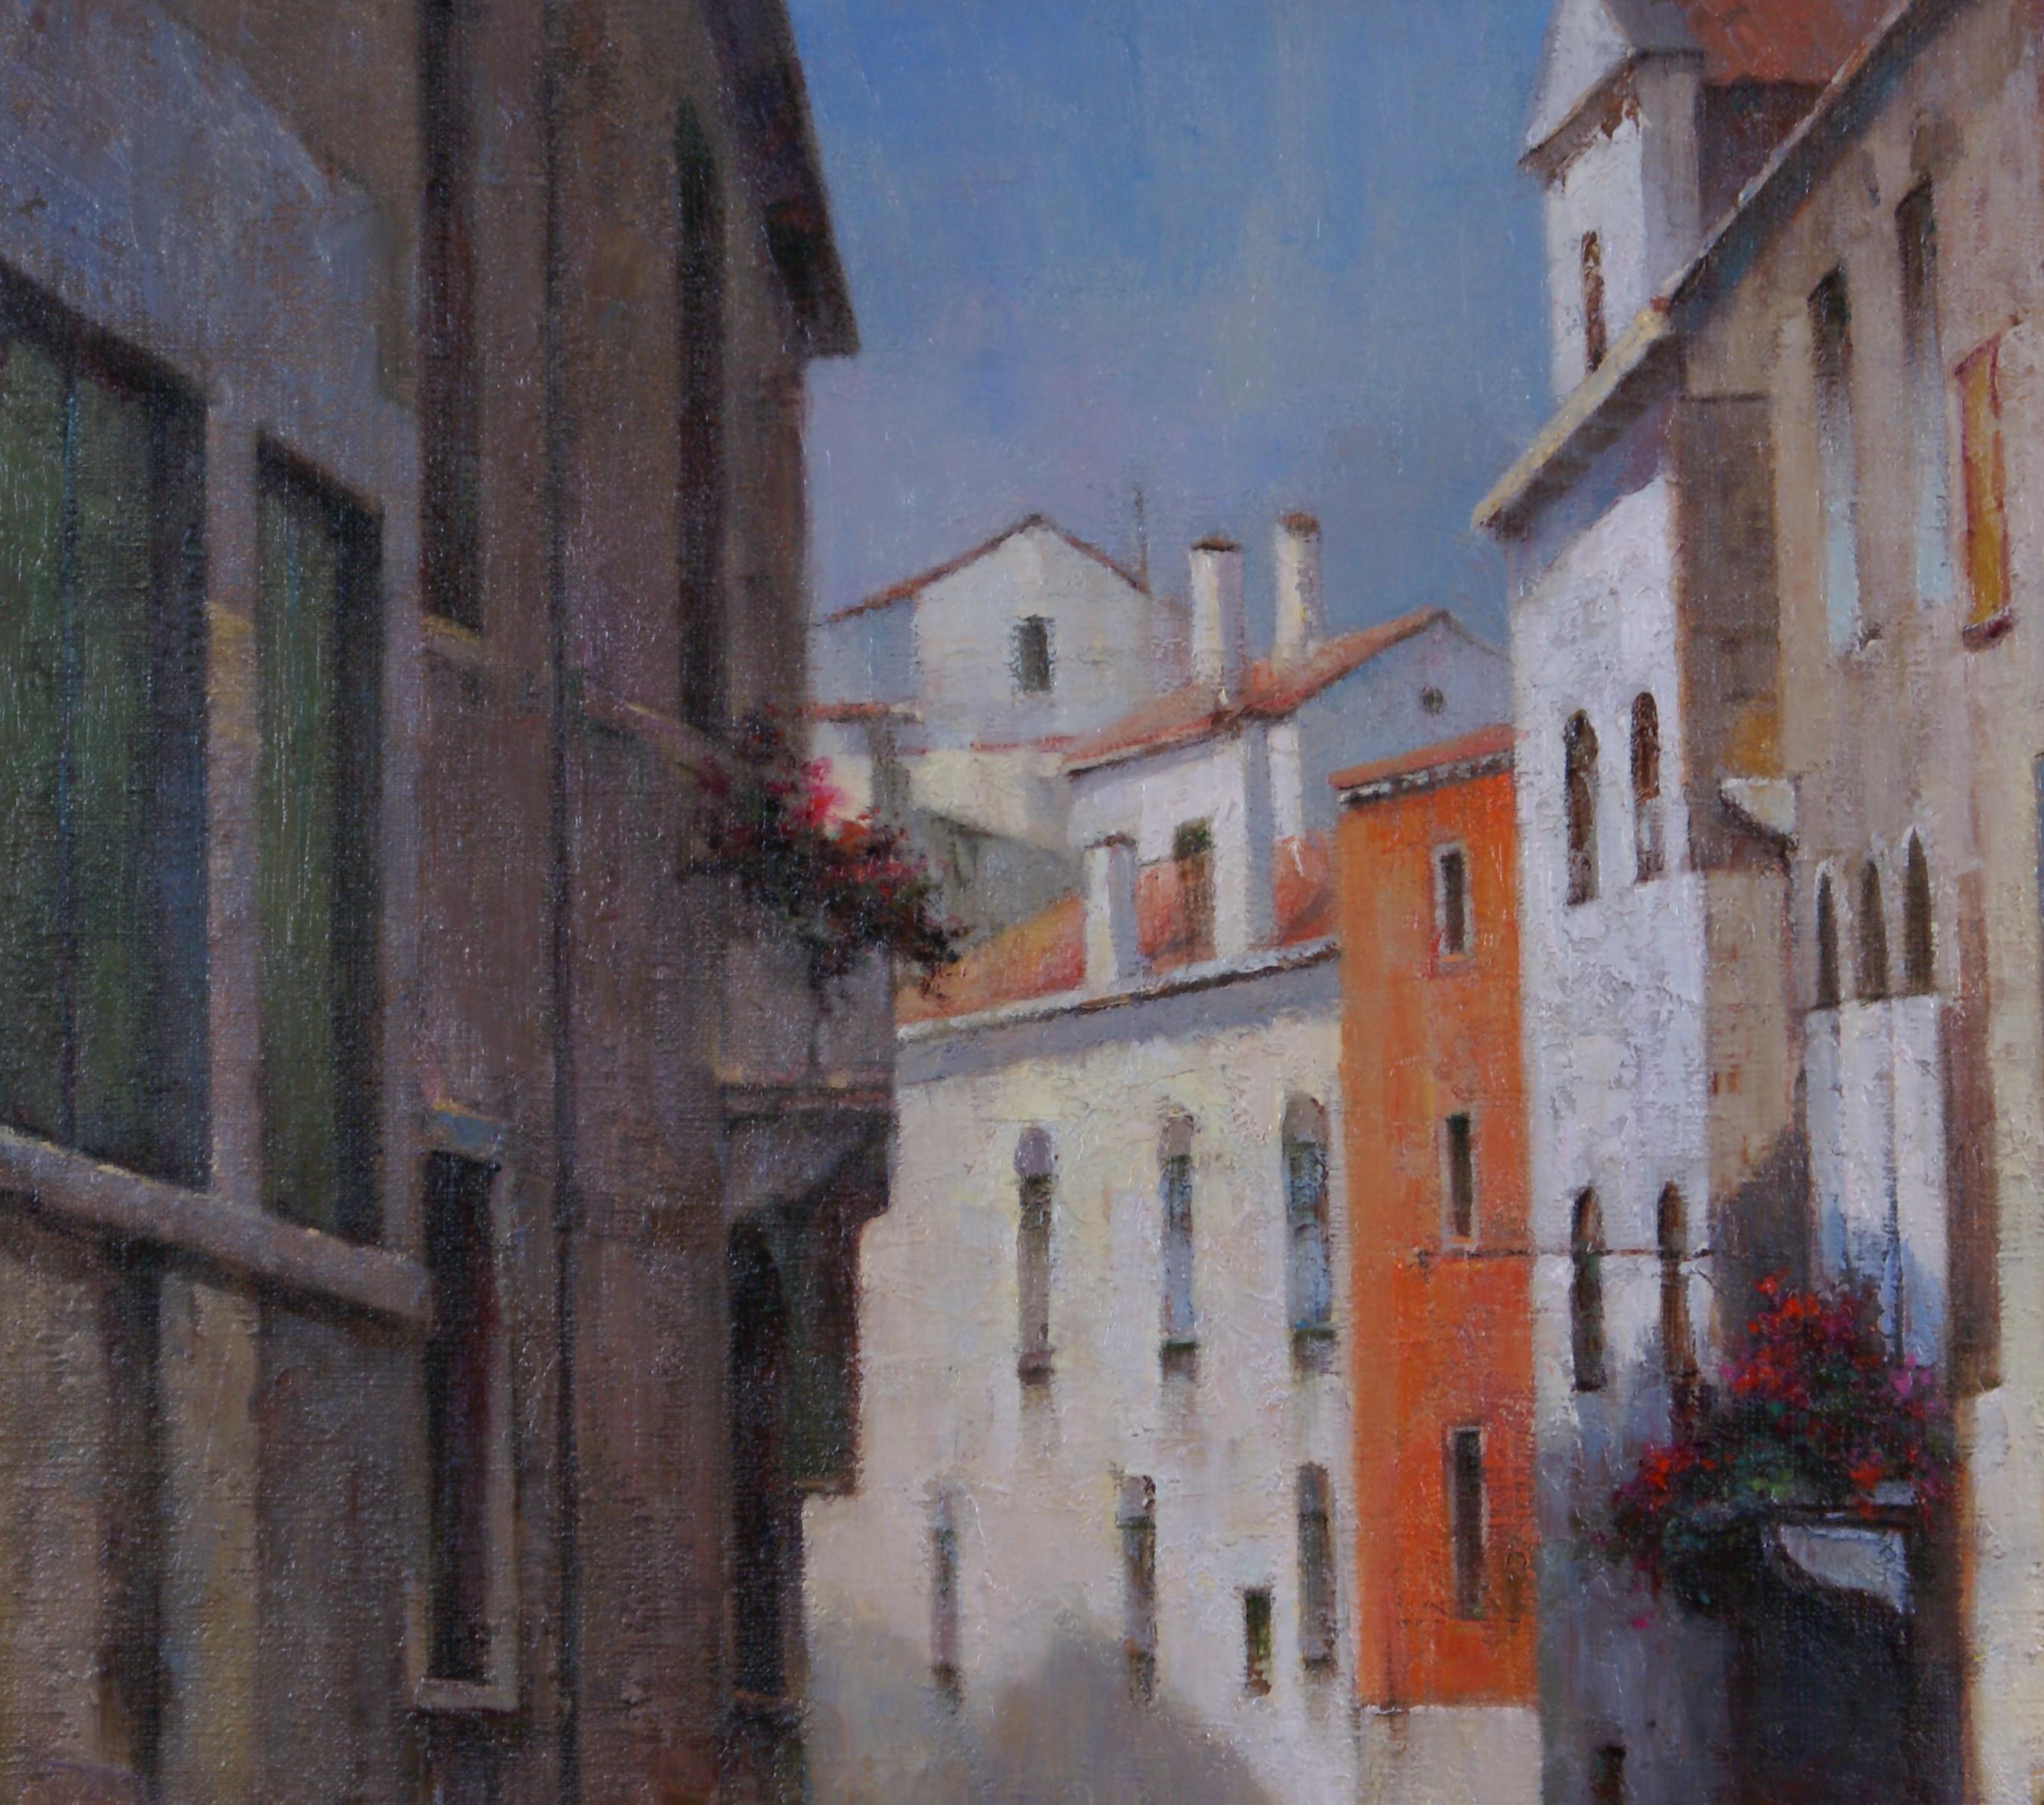 Canal vénitien - Impressionnisme Painting par David Zhao